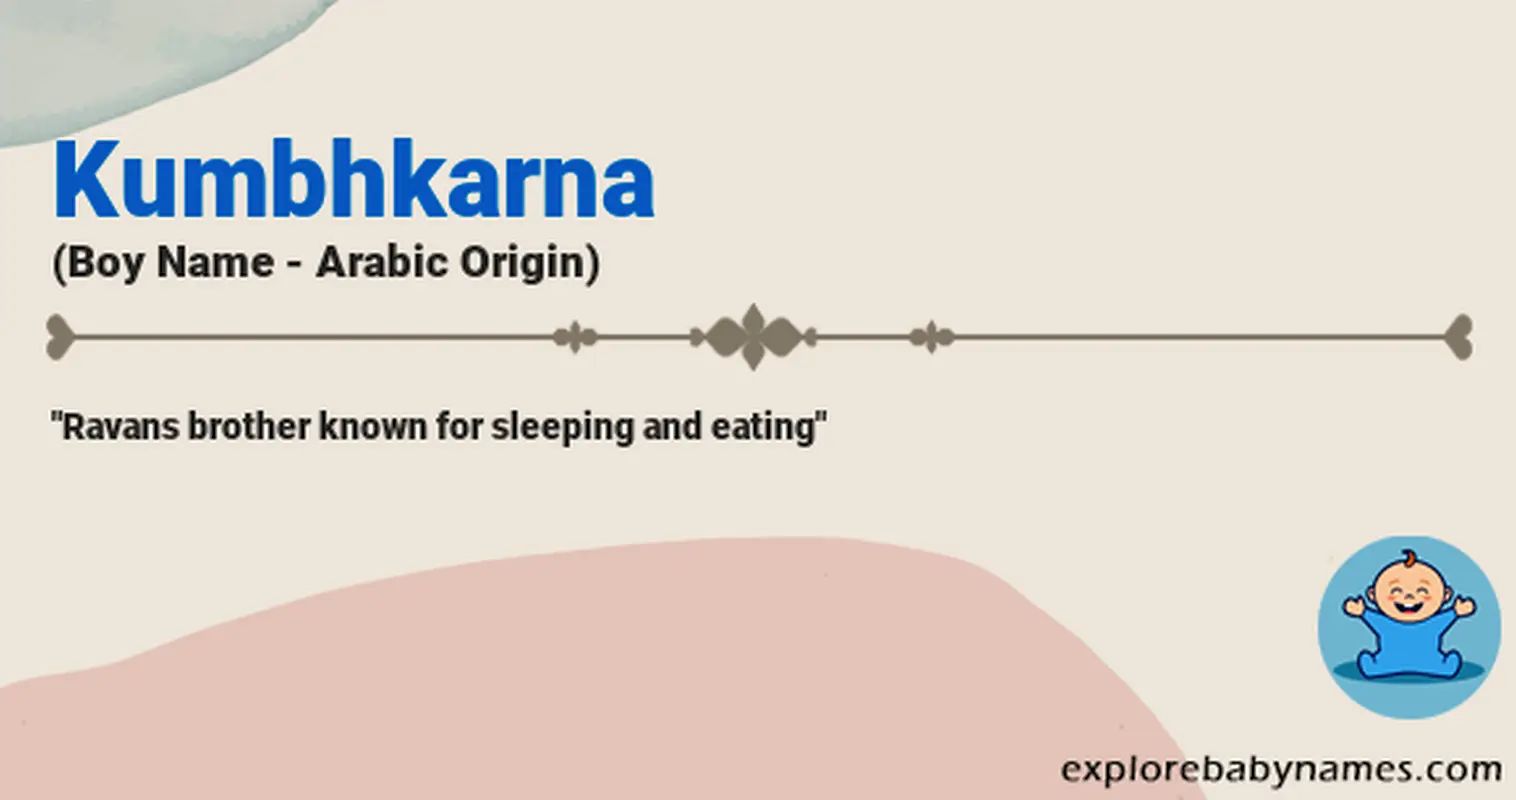 Meaning of Kumbhkarna